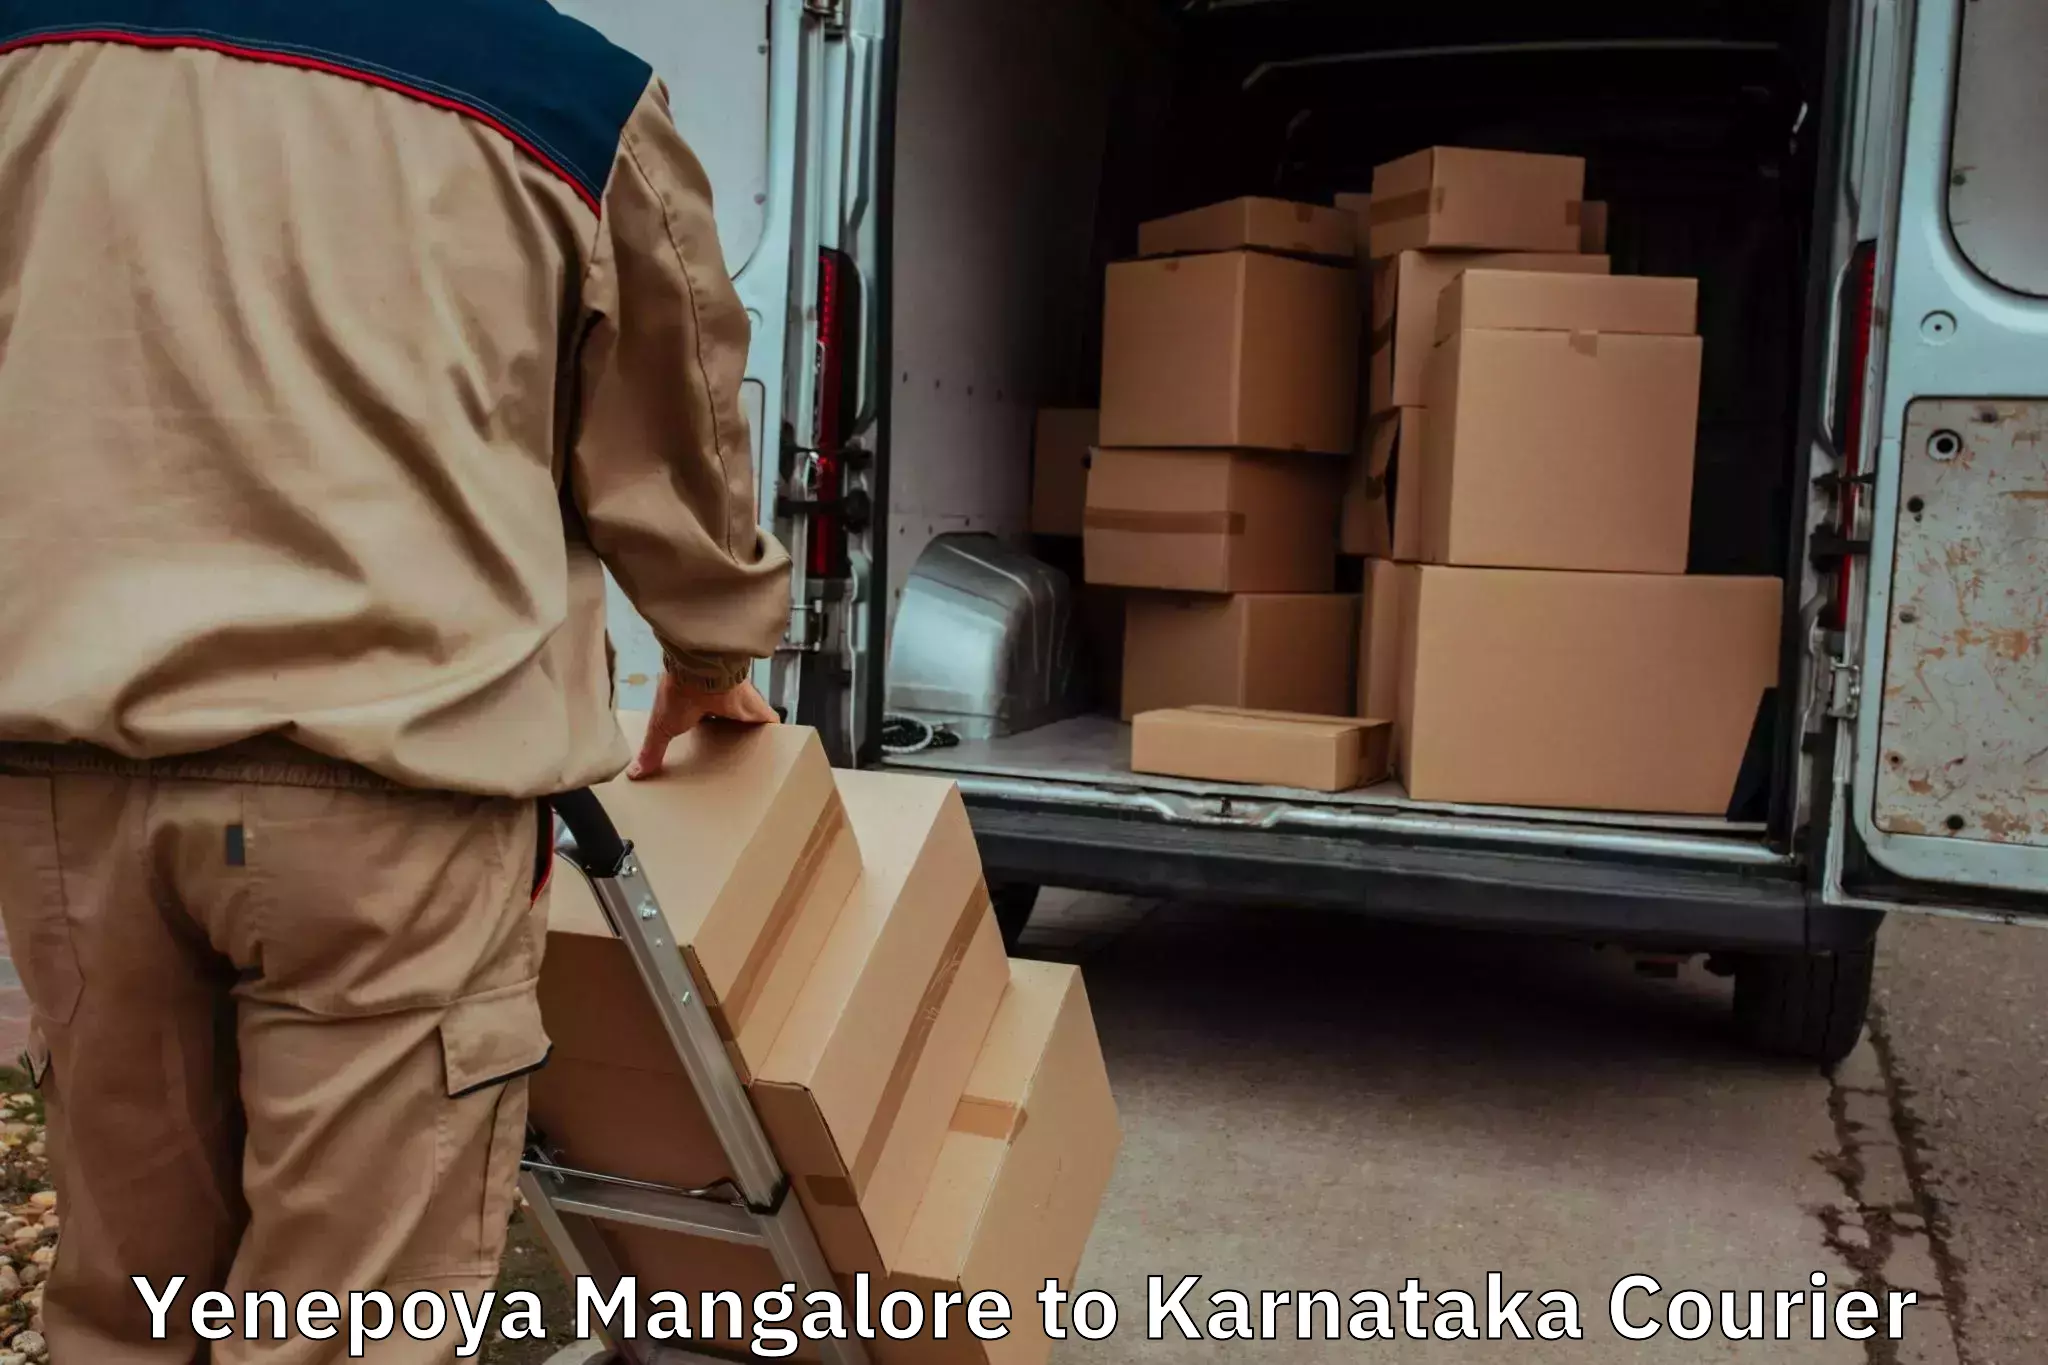 Professional moving assistance Yenepoya Mangalore to Doddaballapura